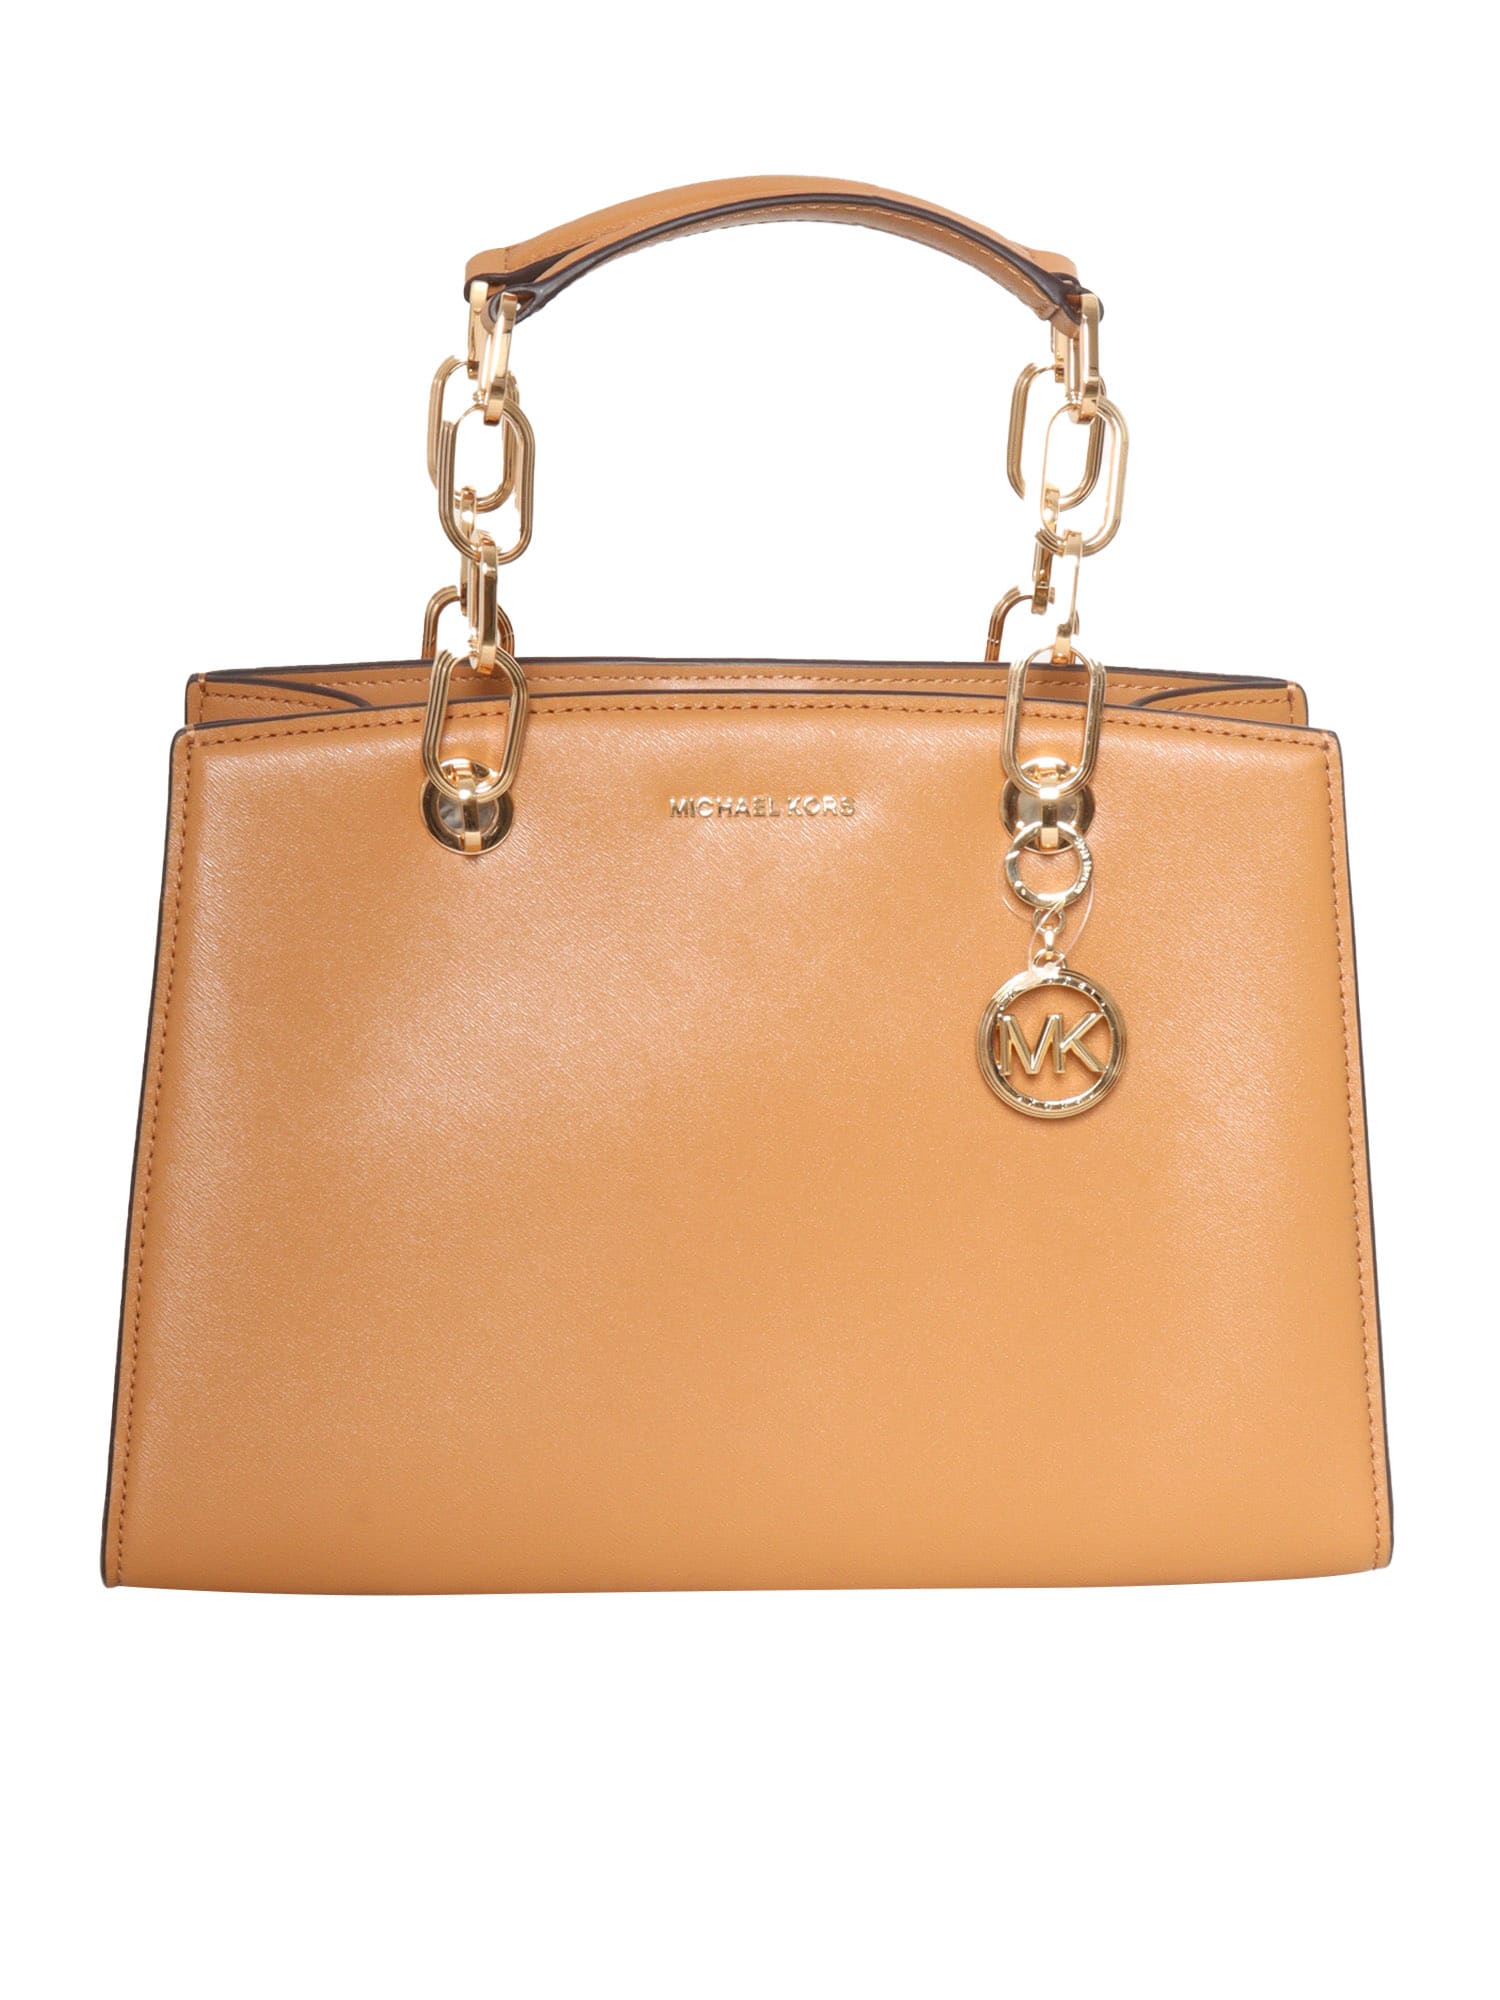 Michael Kors Tan-colored Leather Bag